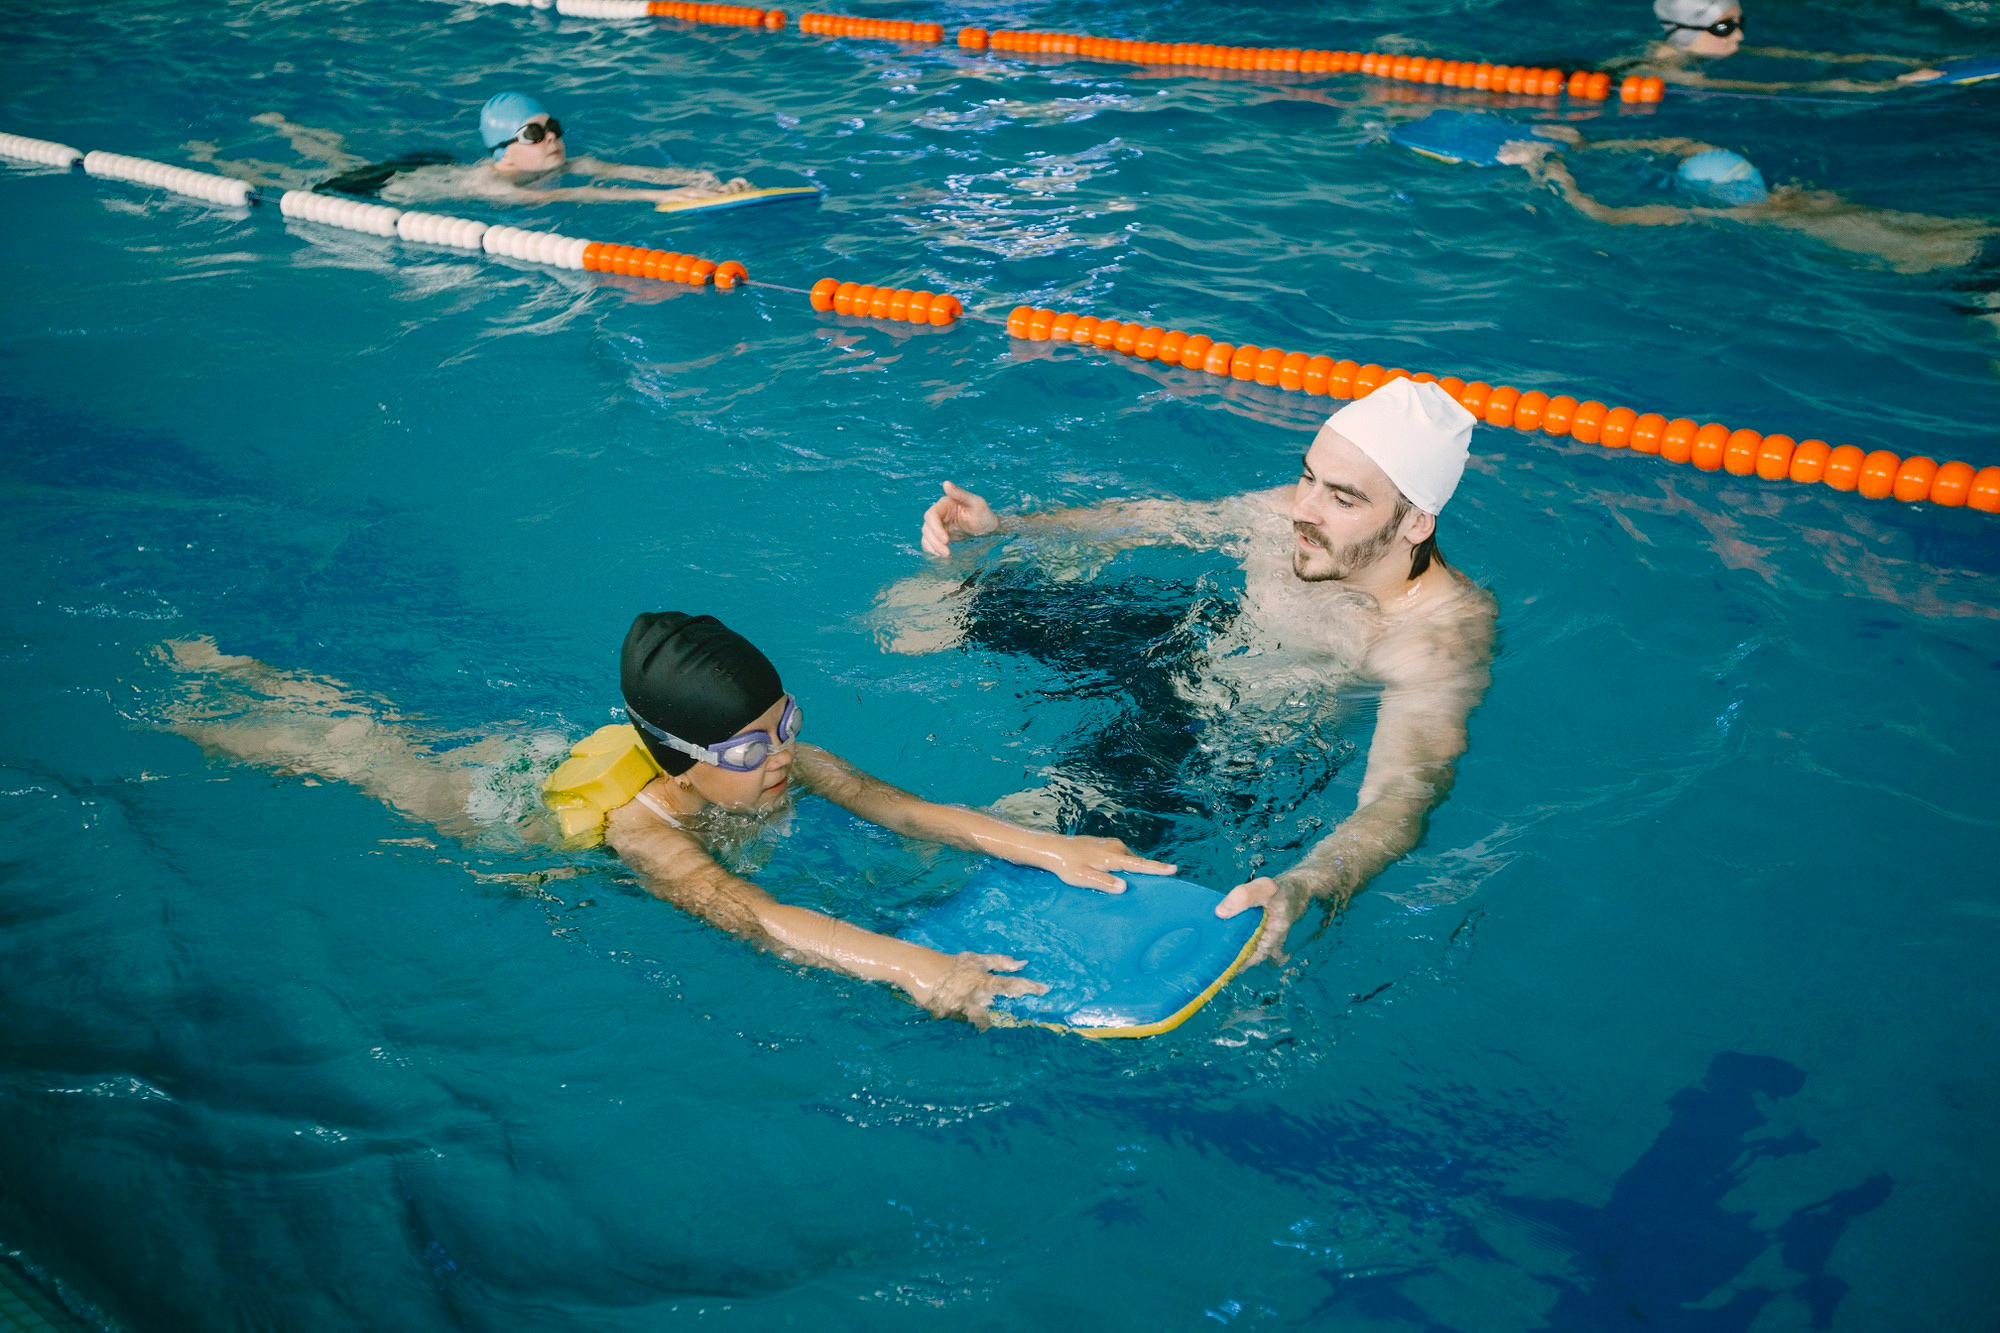 Jak nauczyć dziecko pływać? – 7 praktycznych wskazówek